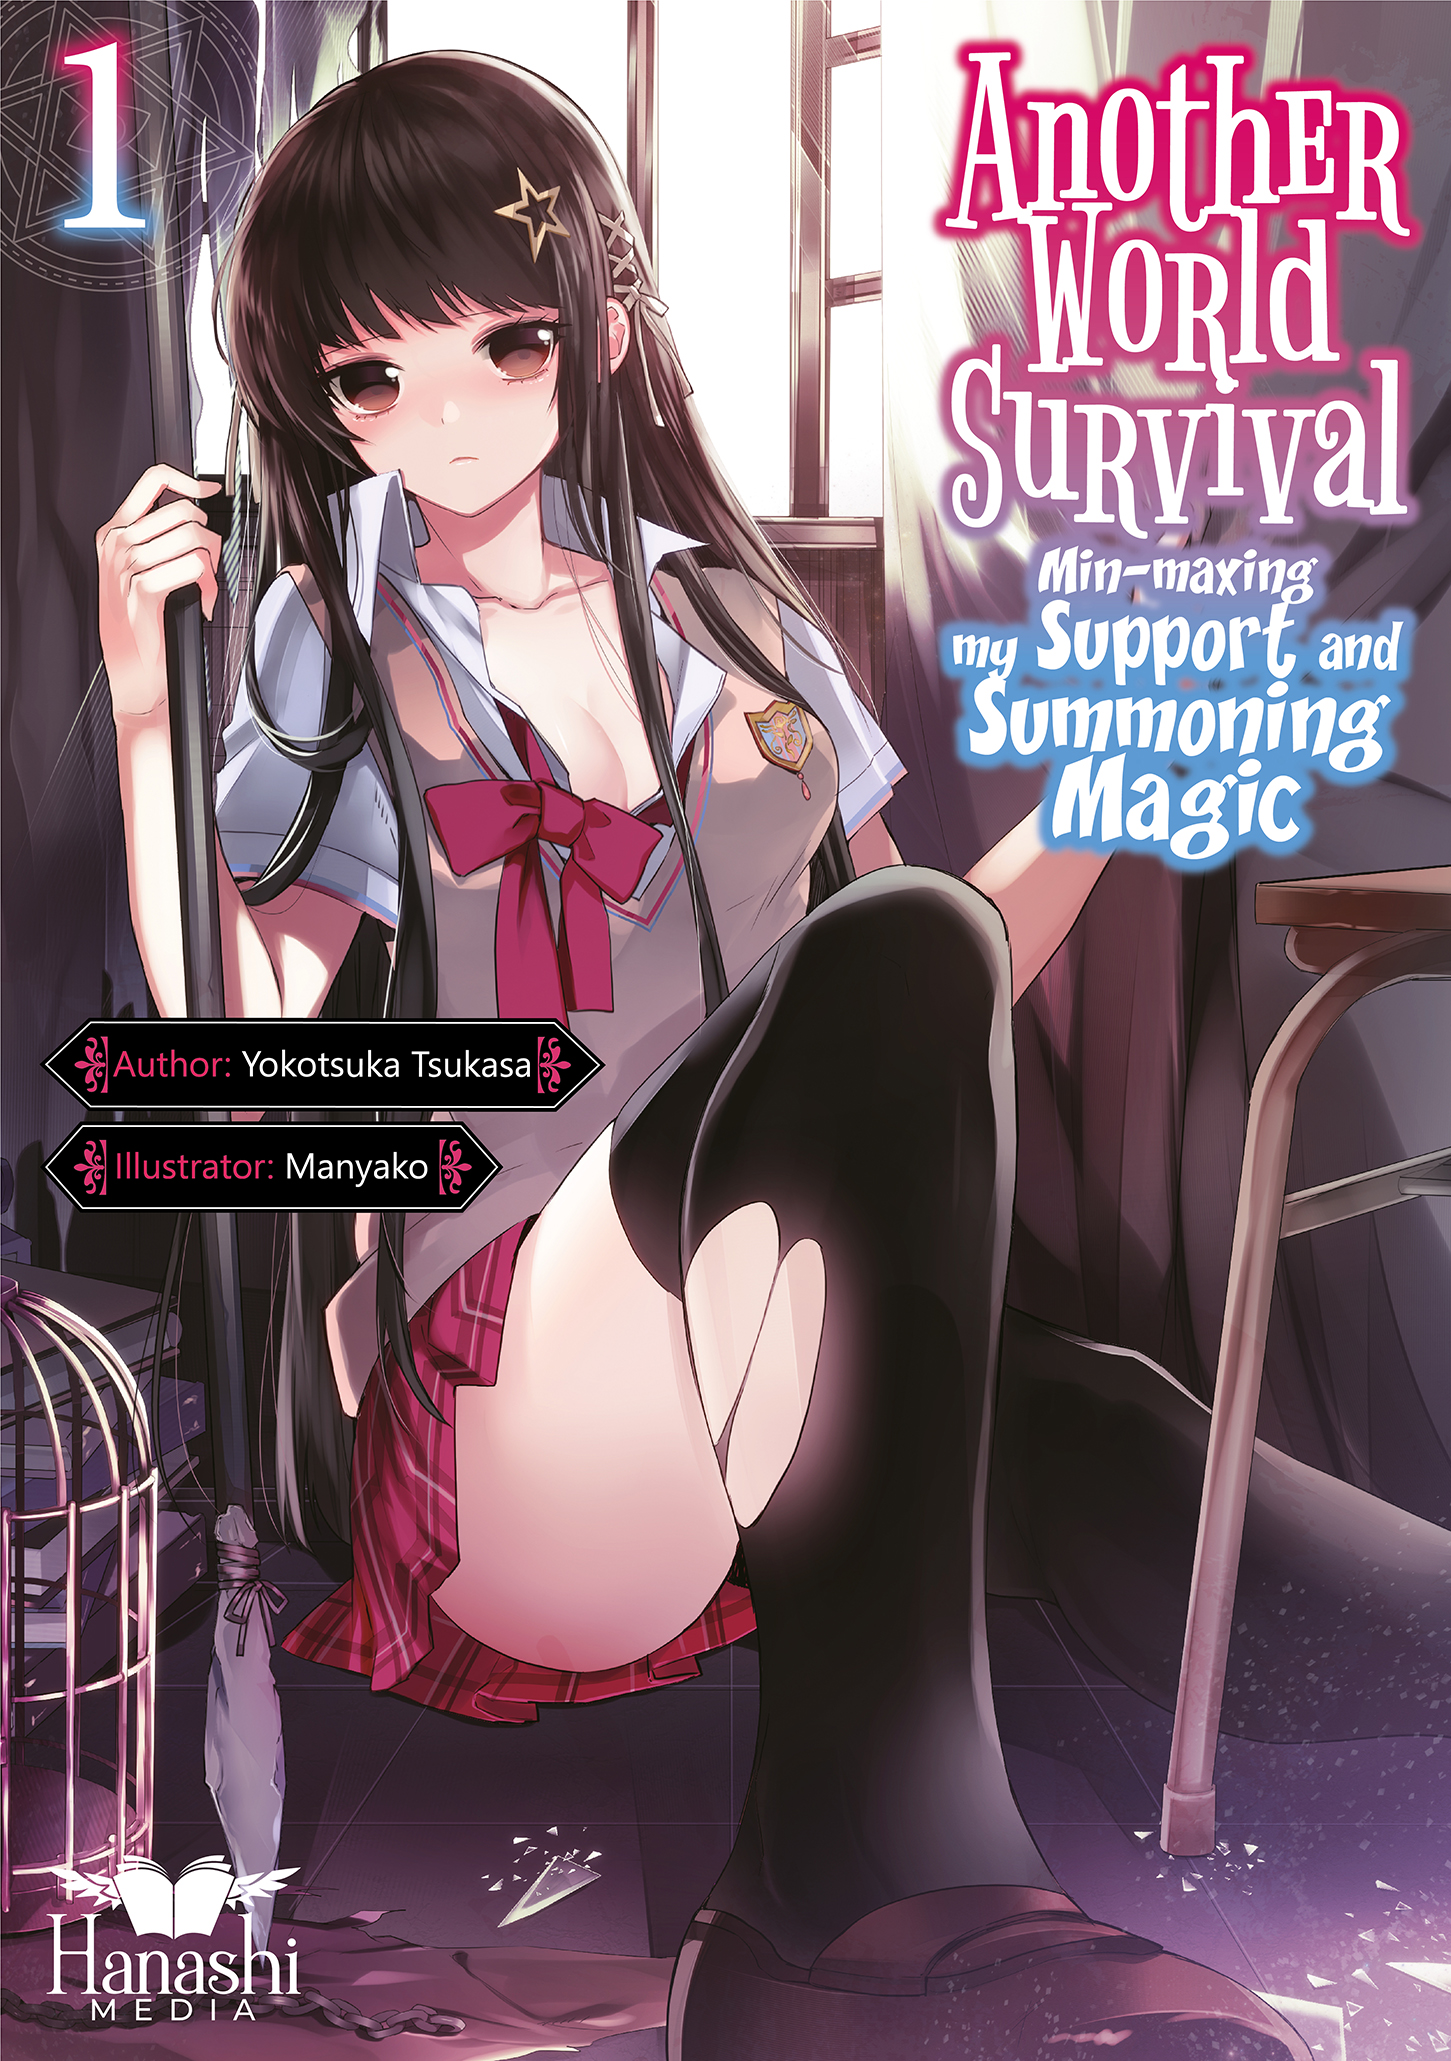 Das Cover von Another World Survival Band 01. Es zeigt Arisu mit einem kruden Speer in einem unordentlichen Klassenraum. Ihre Kleidung ist unordentlich und zerrissen